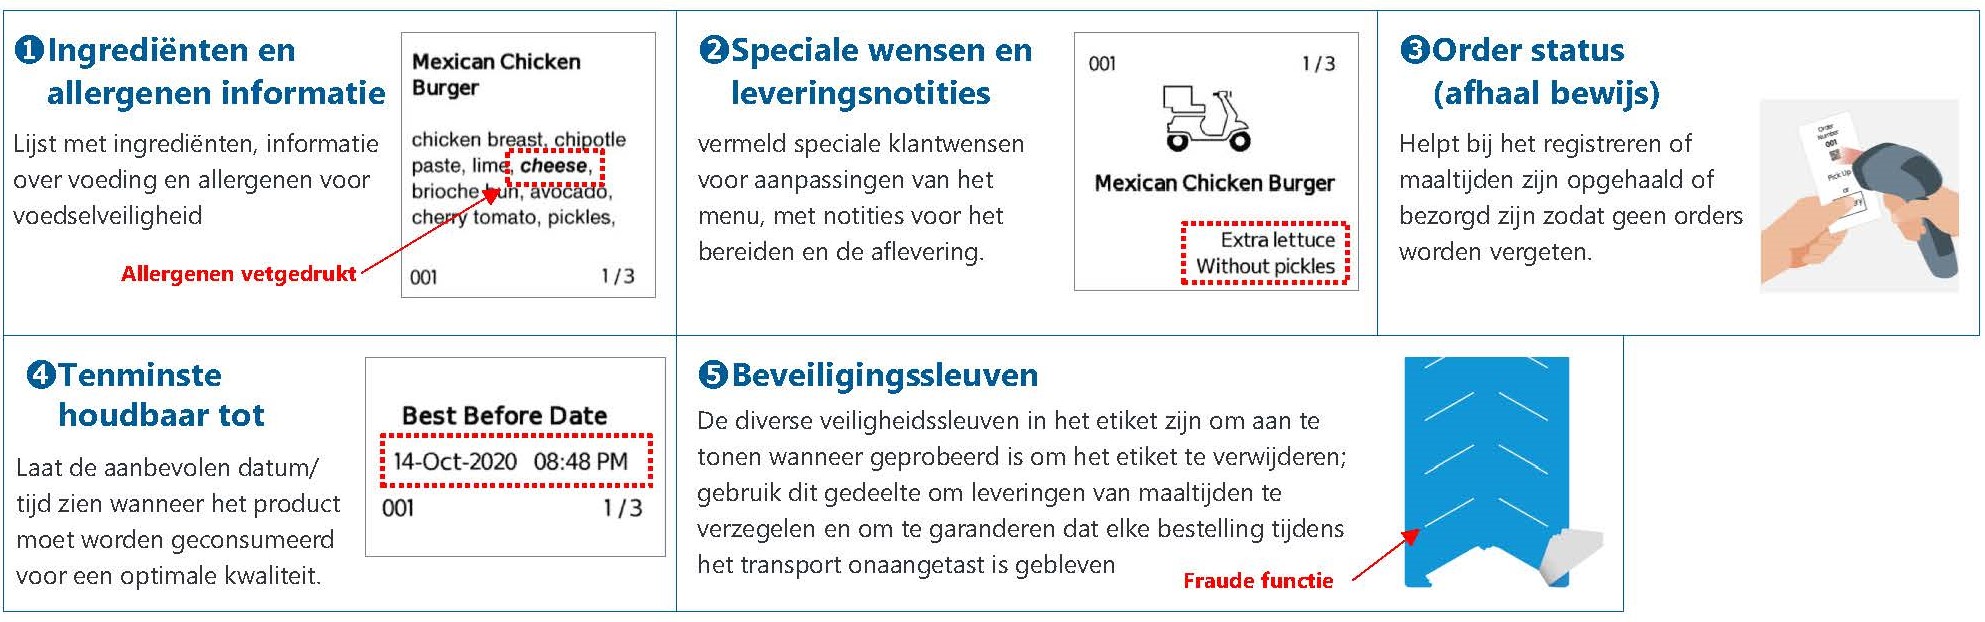 FreshLoc2Go_Labels NL